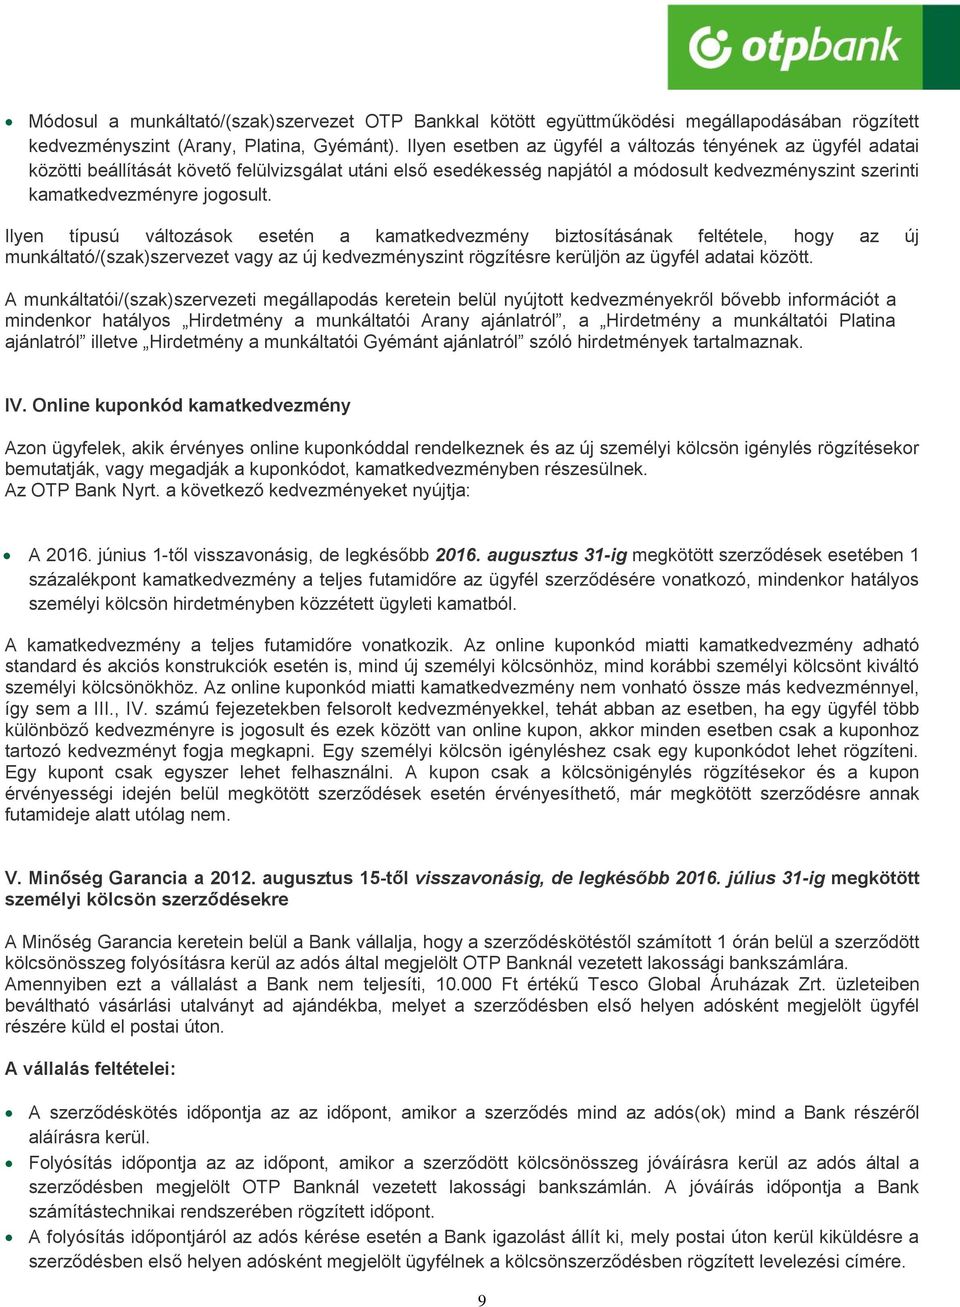 Hirdetmény az OTP Bank személyi kölcsön termékének feltételeiről - PDF  Ingyenes letöltés